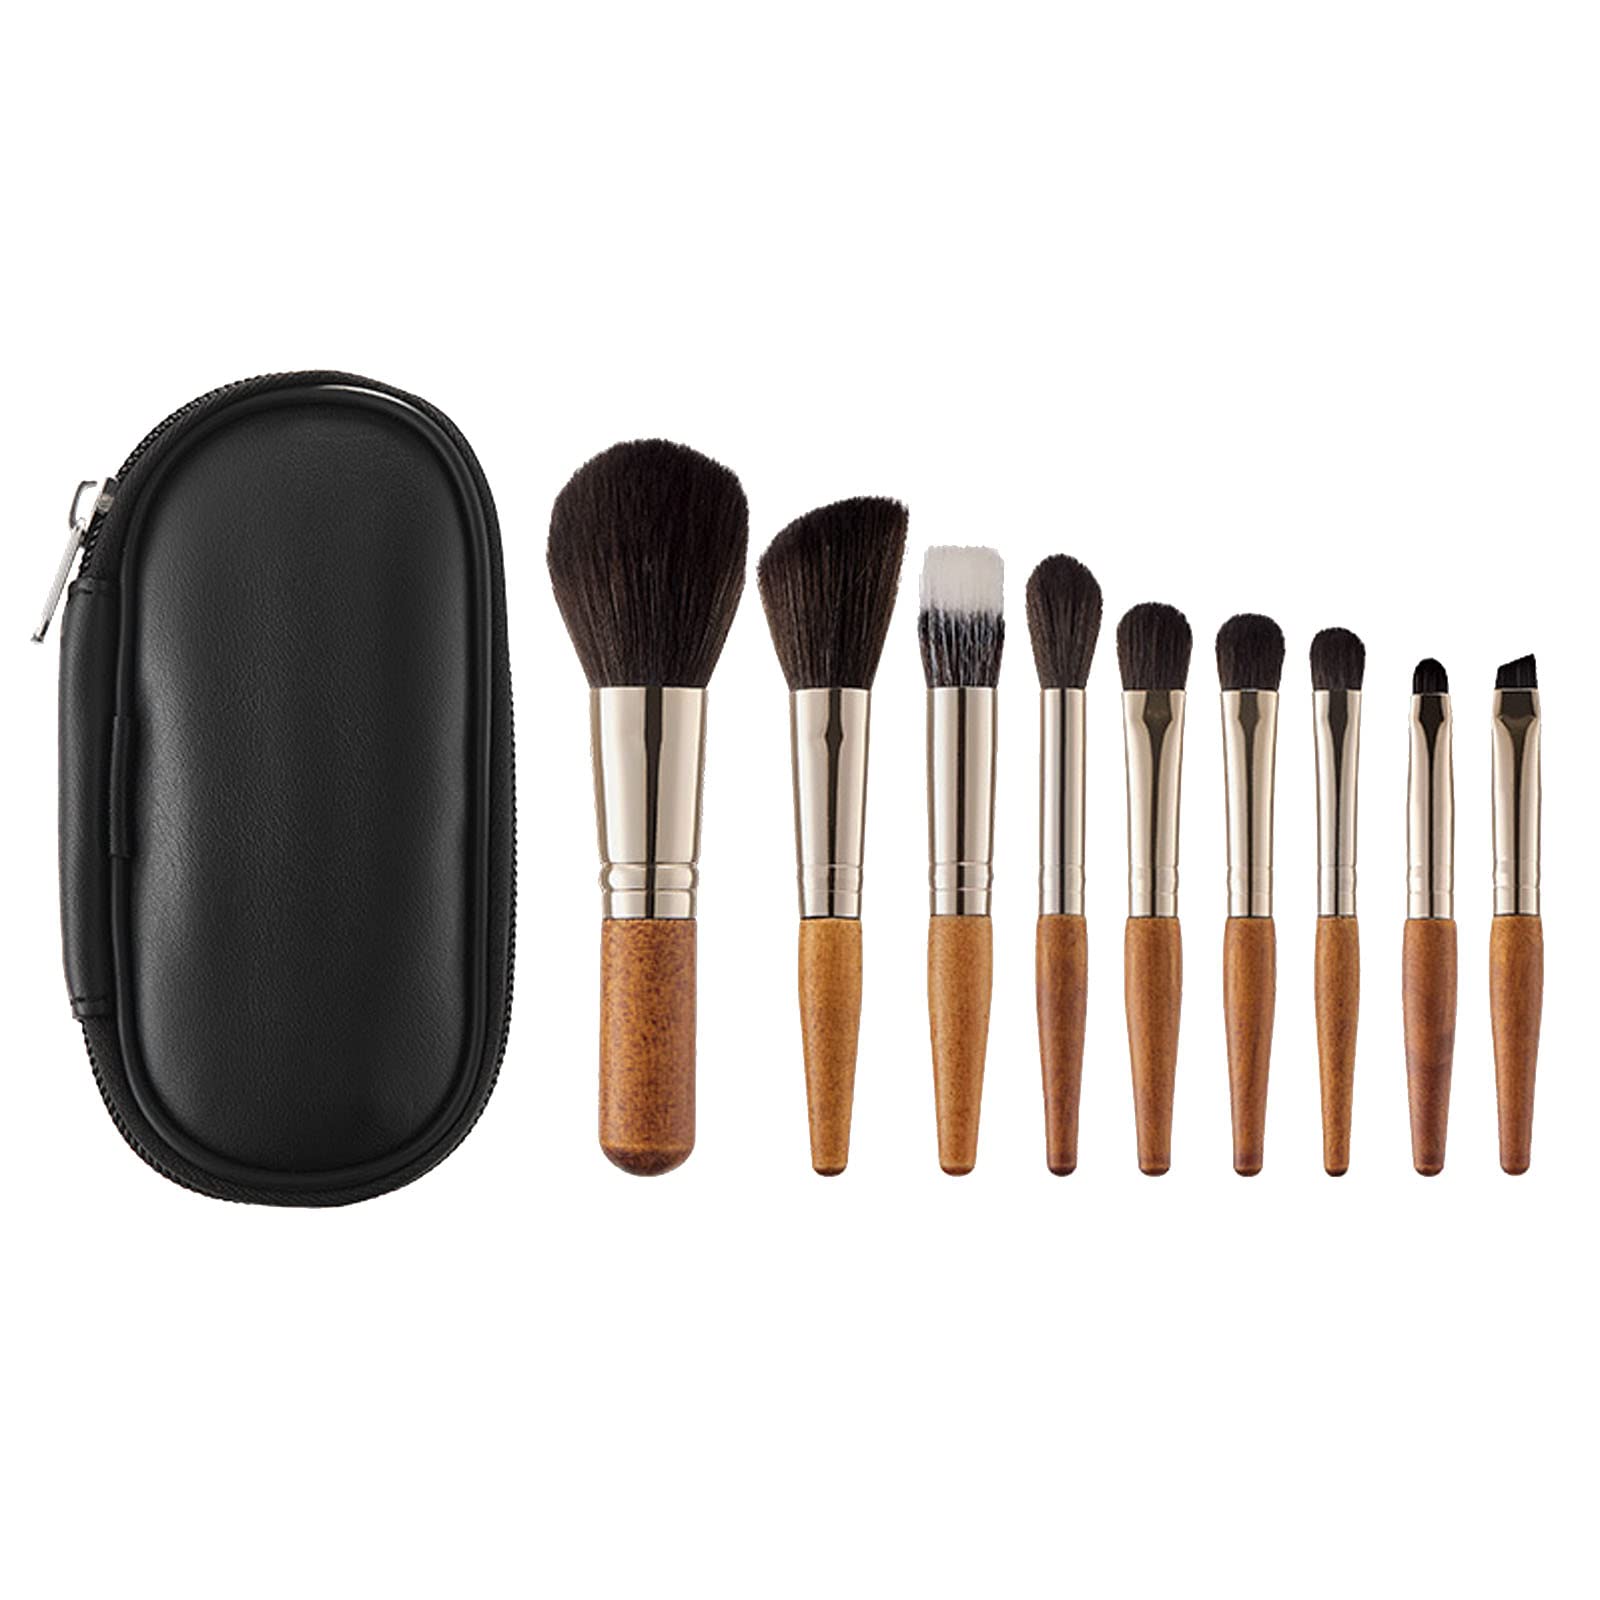 9PCS Makeup Brush Set Professional Travel Small Makeup Brushes with Bag